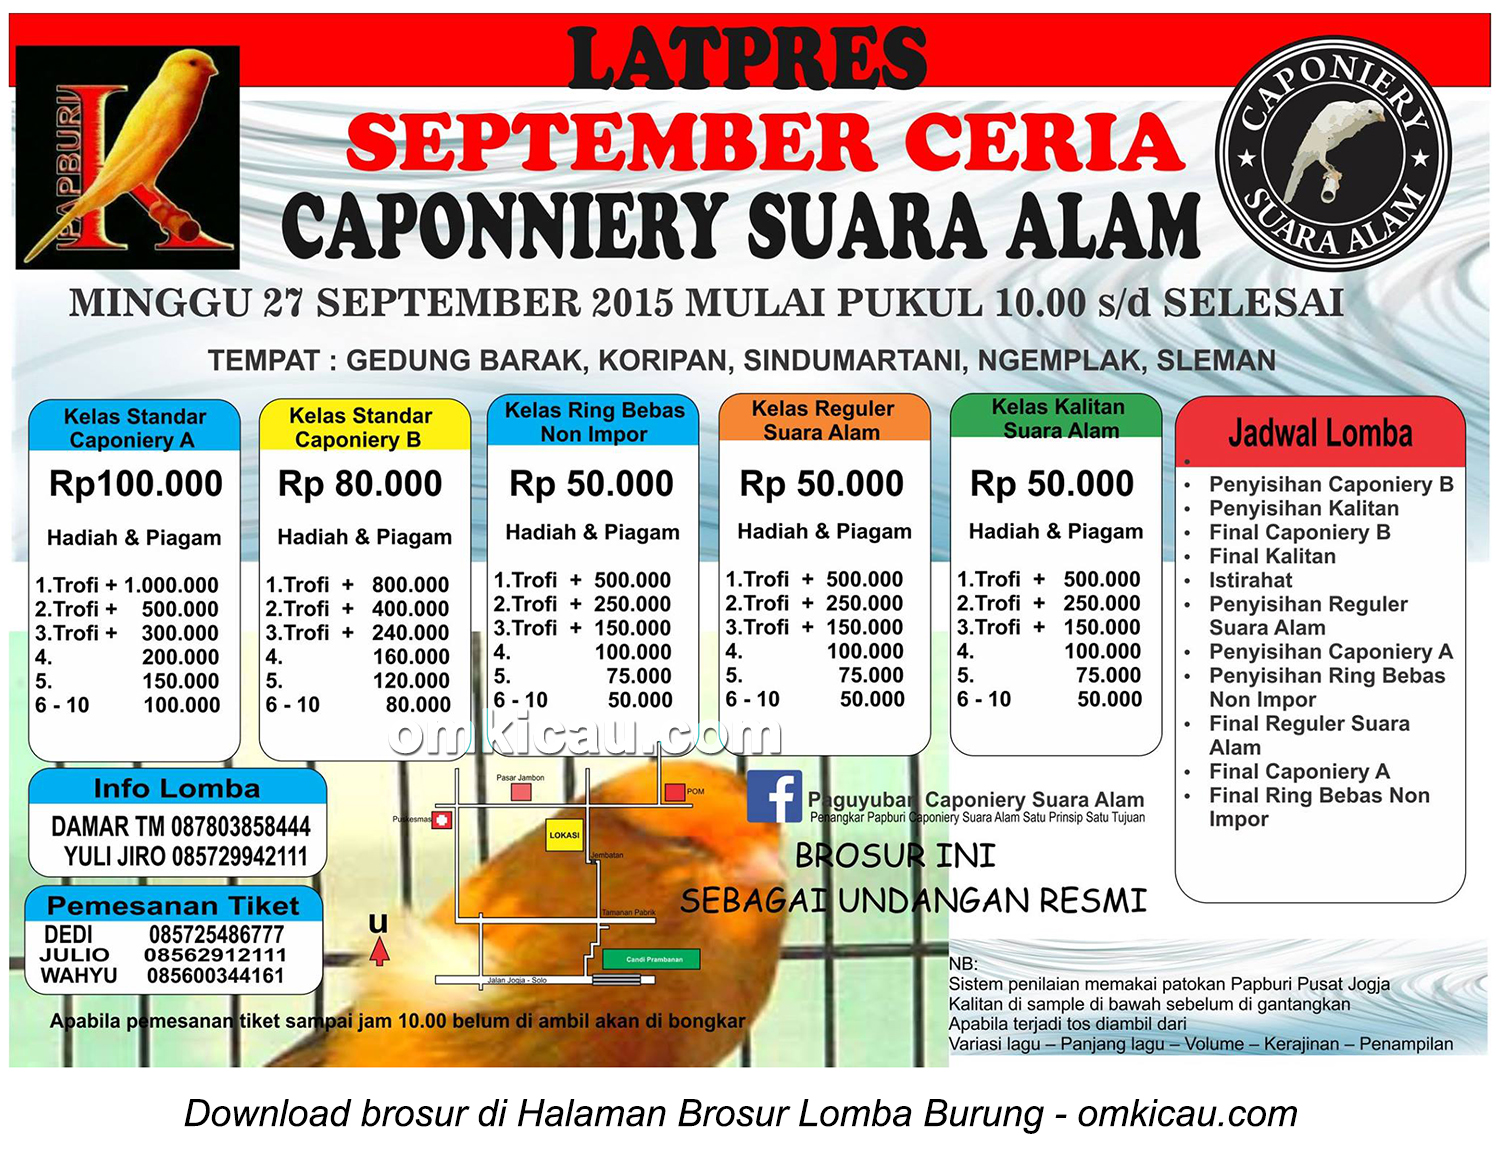 Brosur Latpres September Ceria Caponiery Suara Alam, Sleman, 27 September 2015